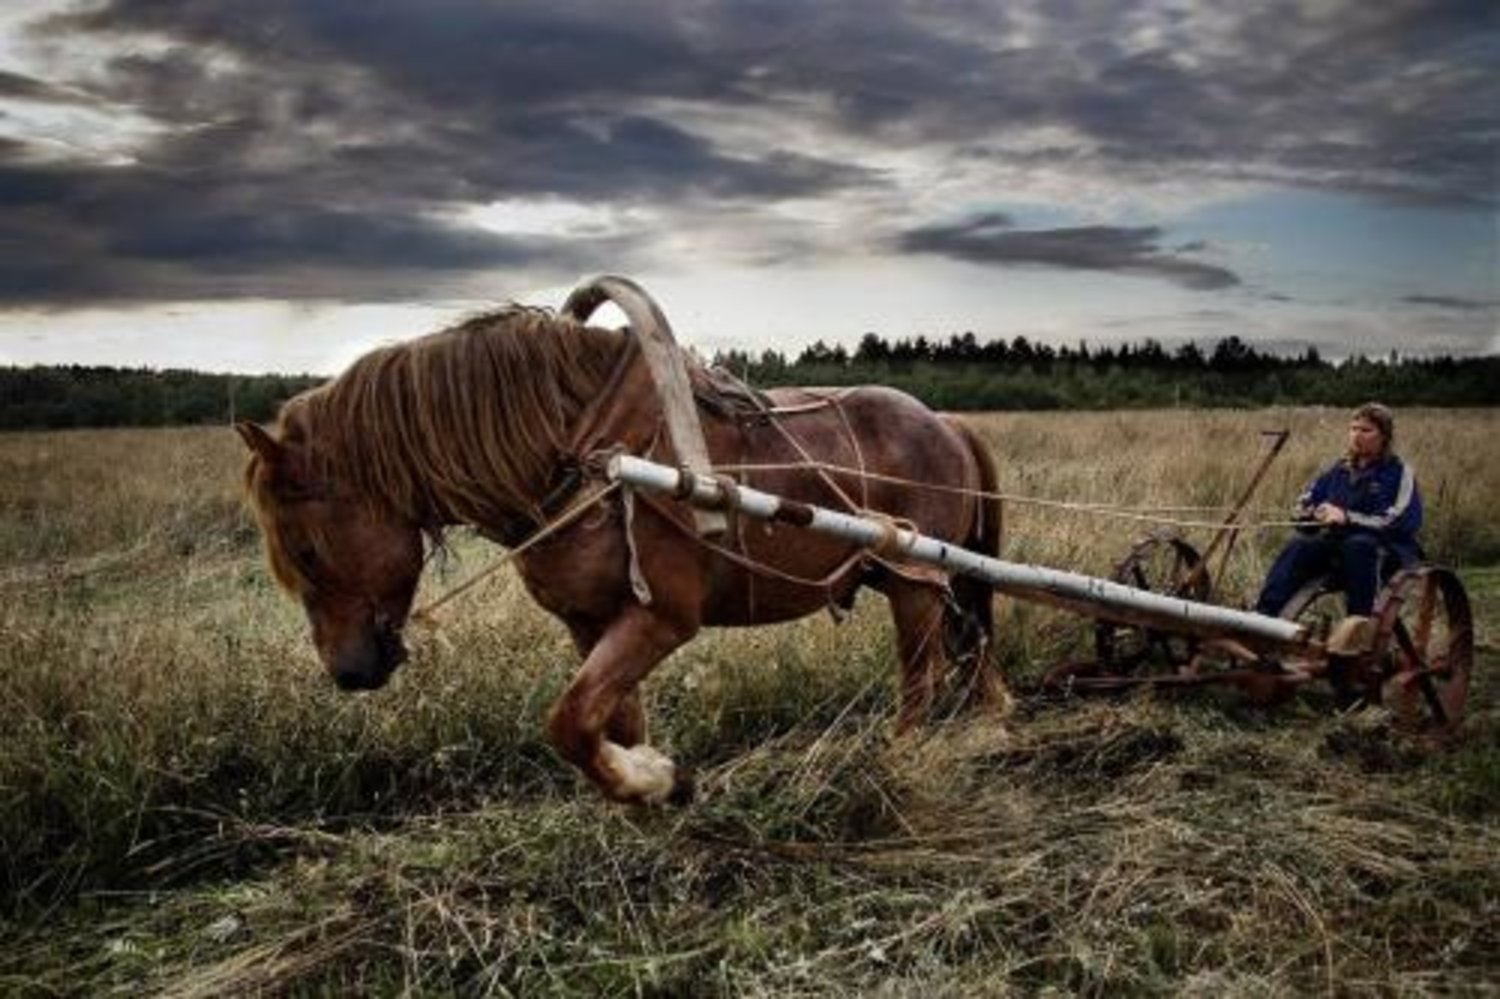 Невдалеке стояла телега. Лошадь в поле. Лошади в деревне. Телега деревенская. Рабочая лошадь.